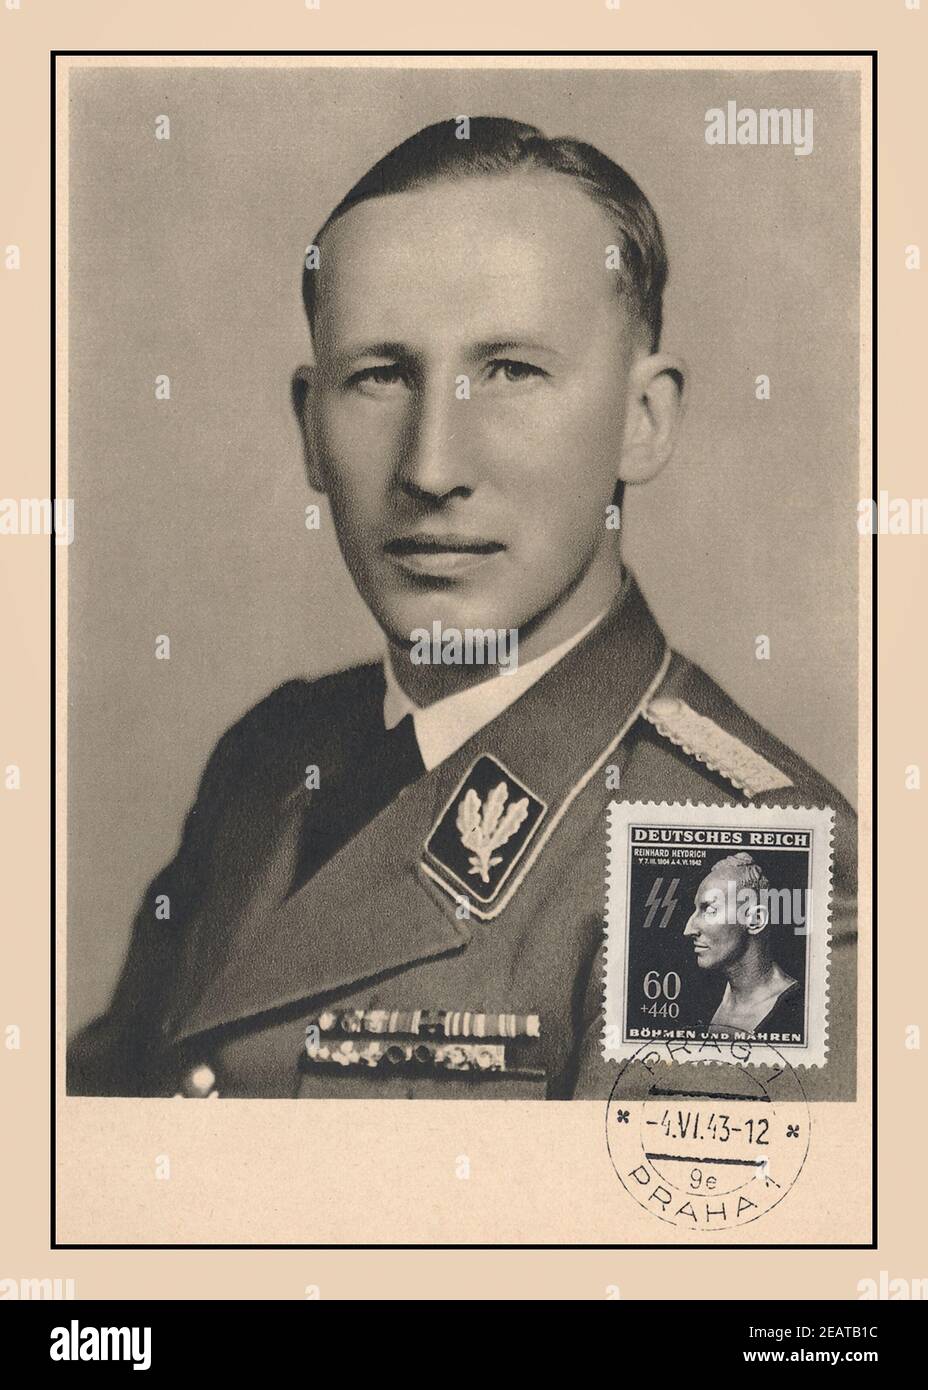 HEYDRICH 1943, WW2 Porträt des SS-Obergruppenführers Reinhard Heydrich, eines brutalen, glühenden Nazi, der für unzählige Kriegsverbrechen verantwortlich war. Ein Favorit von Adolf Hitler. Die darauf folgende Gedenkkarte mit seiner Totenmaske diente als Briefmarke nach seinem sehr zeitgemäßen tapferen Überfall in der Tschechoslowakei im Zweiten Weltkrieg Reinhard Tristan Eugen Heydrich war ein hochrangiger deutscher SS- und Polizeibeamter während der NS-Zeit und/Hauptarchitekt des Holocaust. Er war Chef des Reichssicherheitshauptamtes, auch Stellvertretender Reichsprotektor von Böhmen und Mähren. Zweiter Weltkrieg 2. Weltkrieg Stockfoto